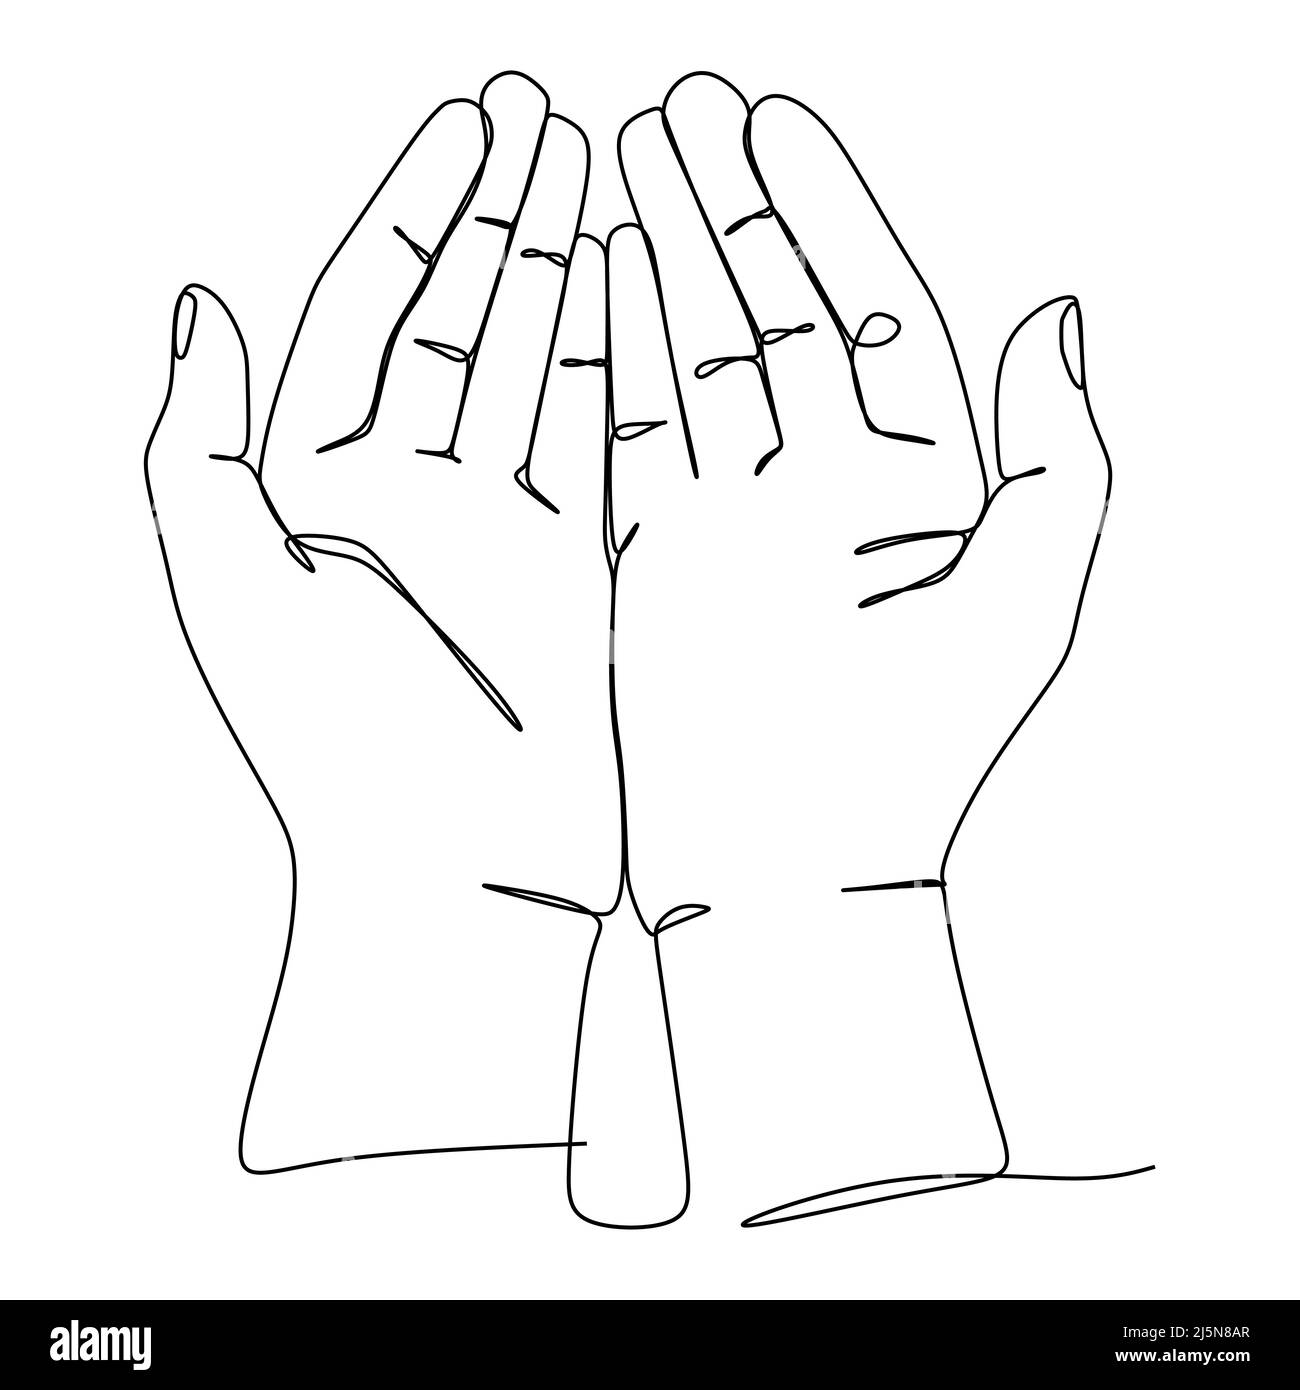 Vektorgrafik für die fortlaufende Linienführung. Betende Hand Zeichen und Symbol der Handgesten. Einzelne fortlaufende Zeichnungslinie. Handgezeichnete Kunst Stock Vektor